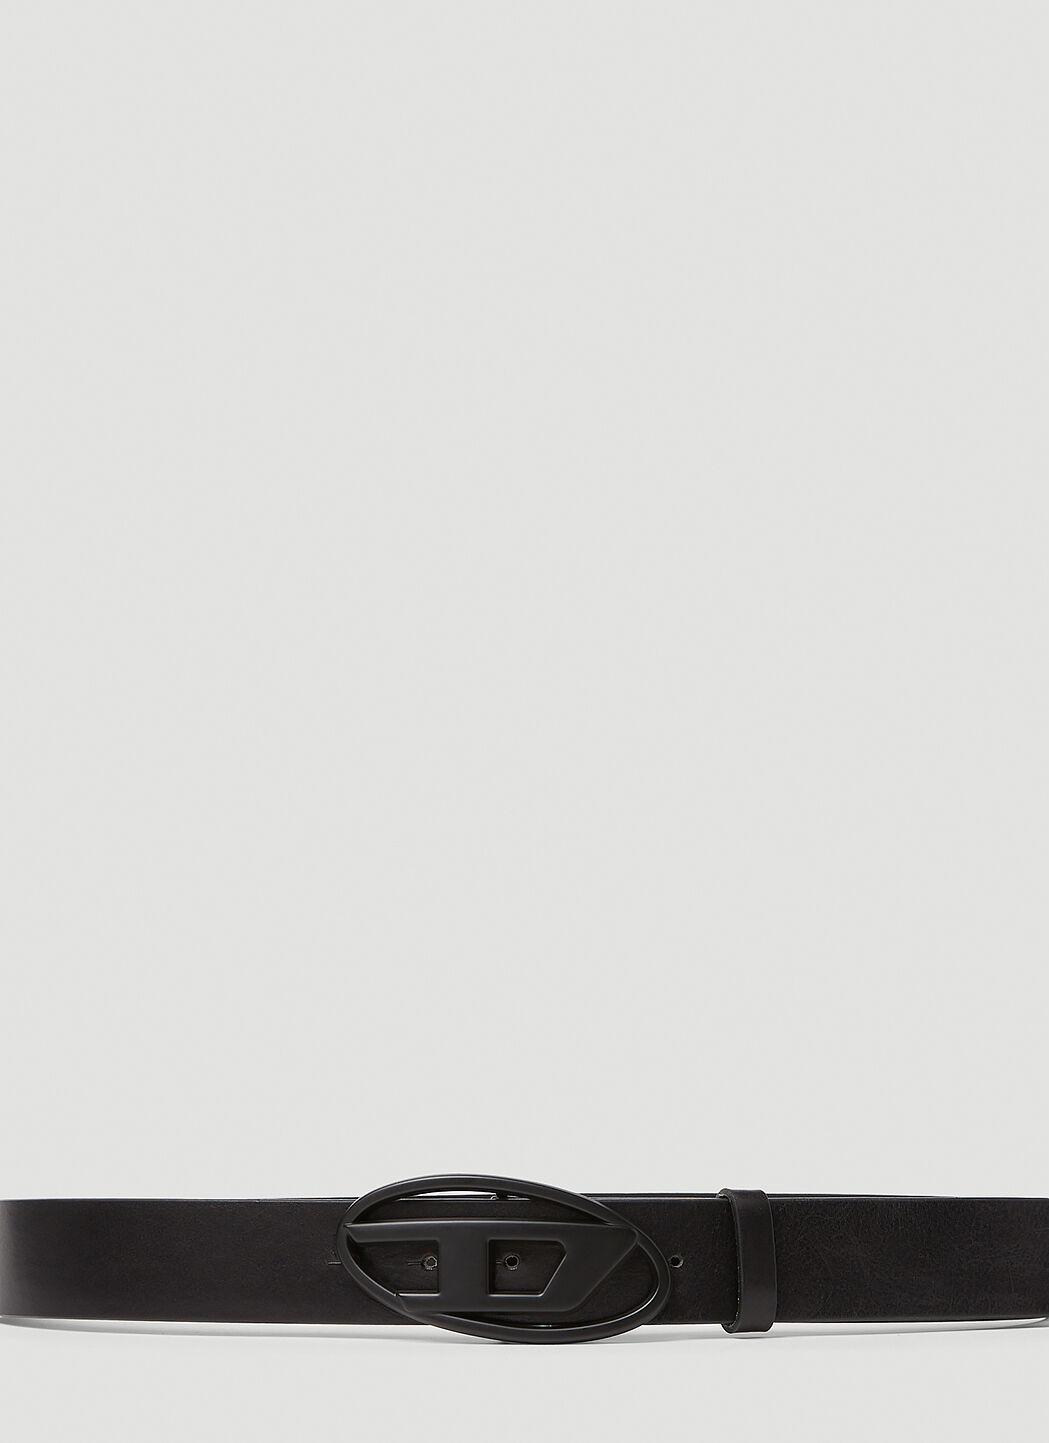 Diesel B-1DR 皮革腰带  黑色 dsl0355001